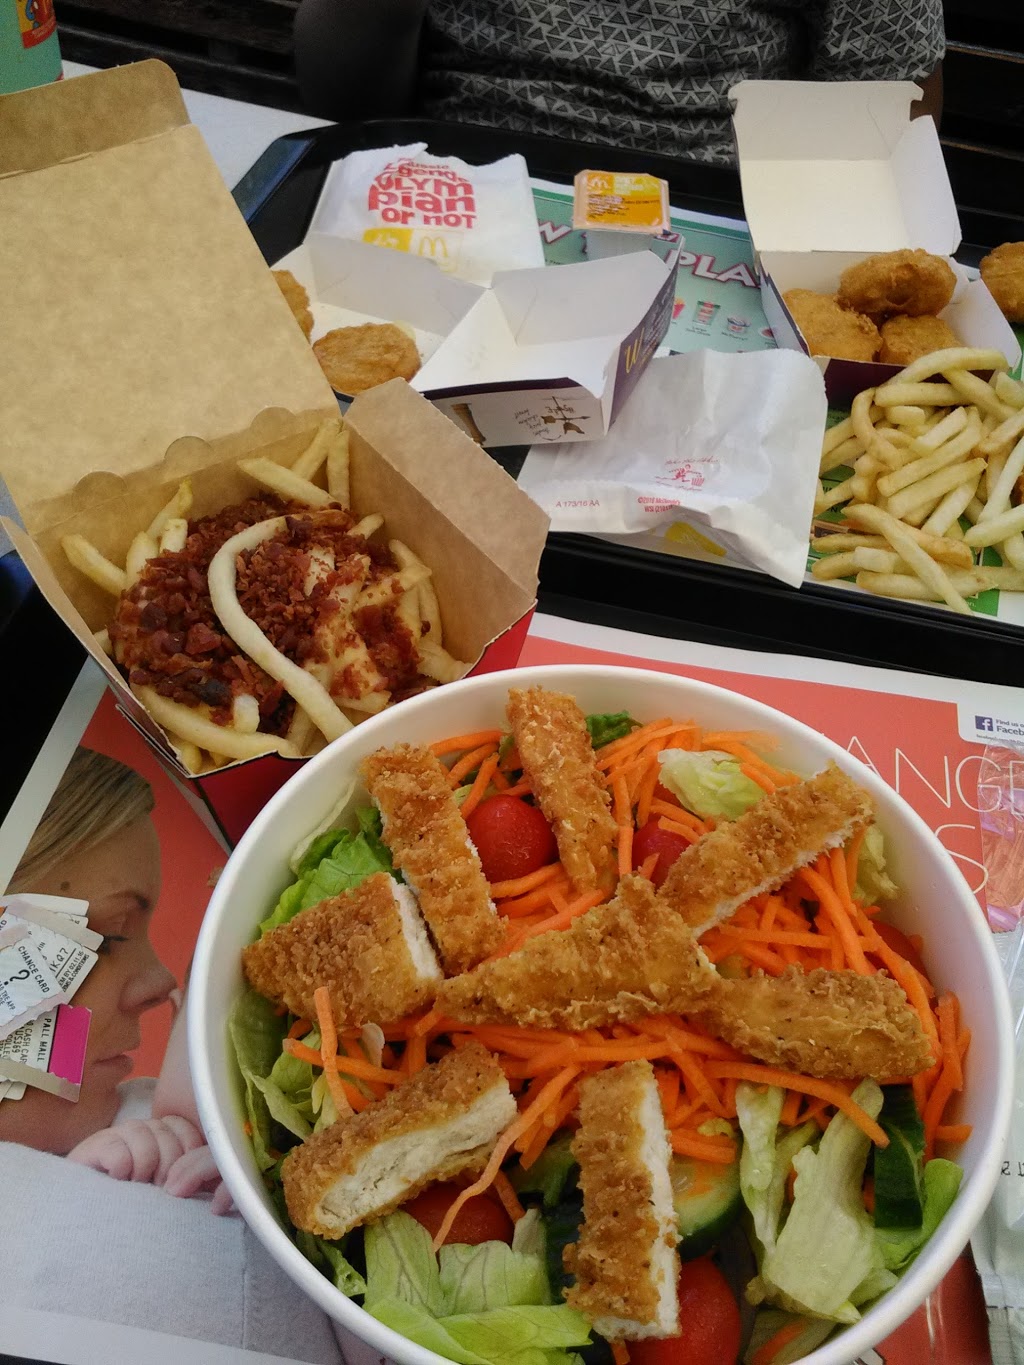 McDonalds Mildura | meal takeaway | 395 Deakin Ave, Mildura VIC 3500, Australia | 0350222544 OR +61 3 5022 2544